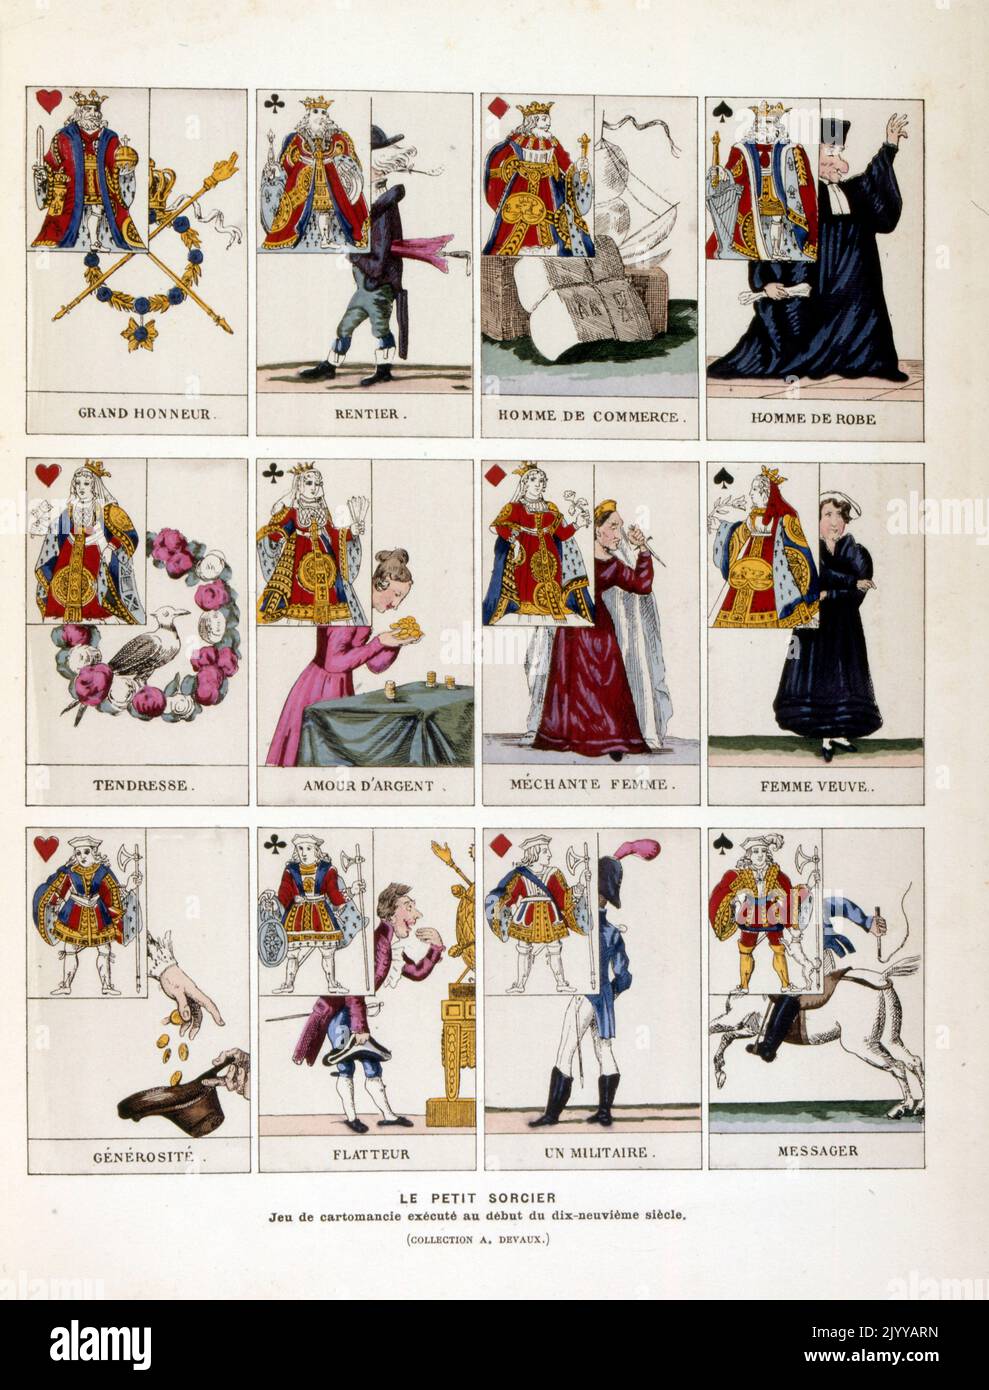 Illustration colorée d'un pack de cartes à jouer appelé « The Little Witch » d'un jeu de cartes magique joué au début du 19th siècle. Banque D'Images